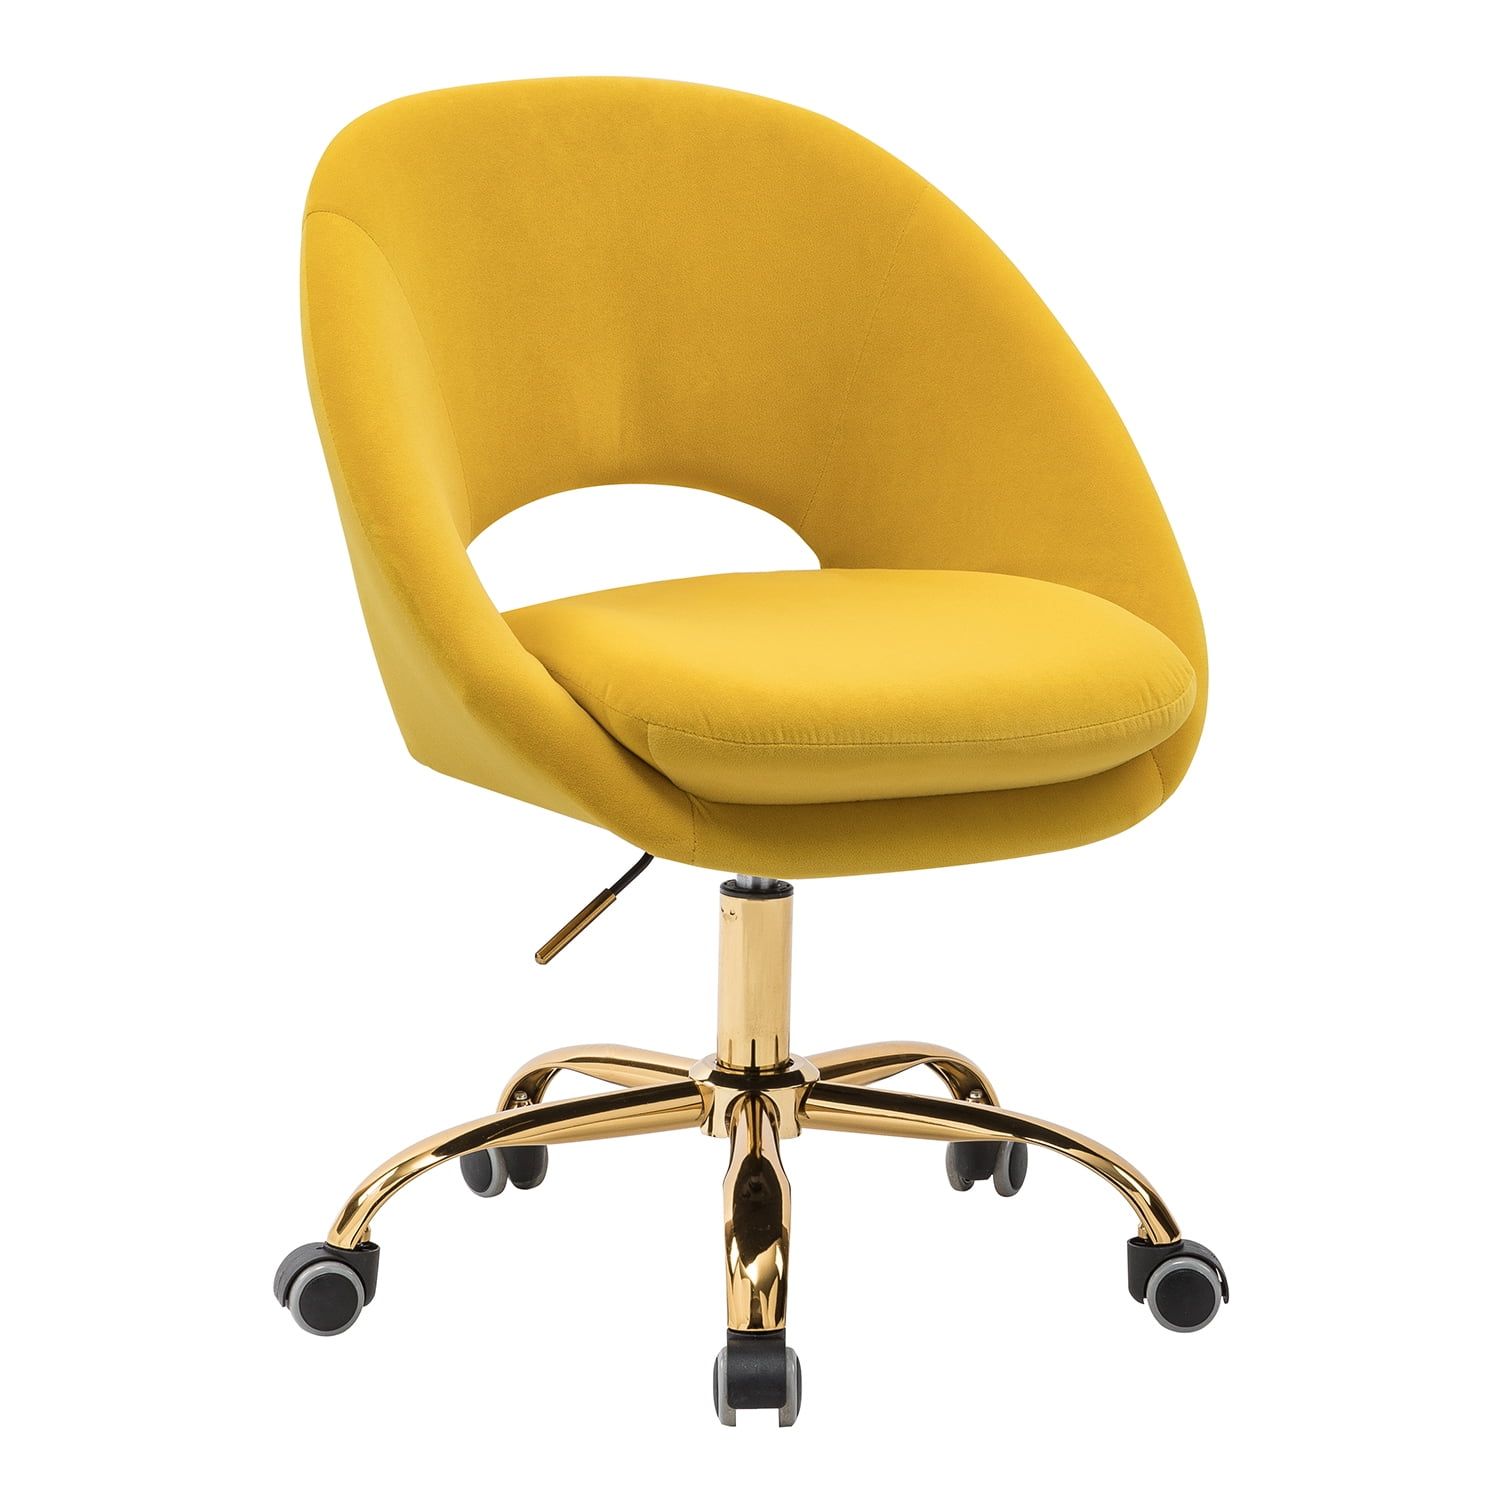 Chic Velvet Swivel Task Chair in Sunshine Yellow with Golden Metal Legs